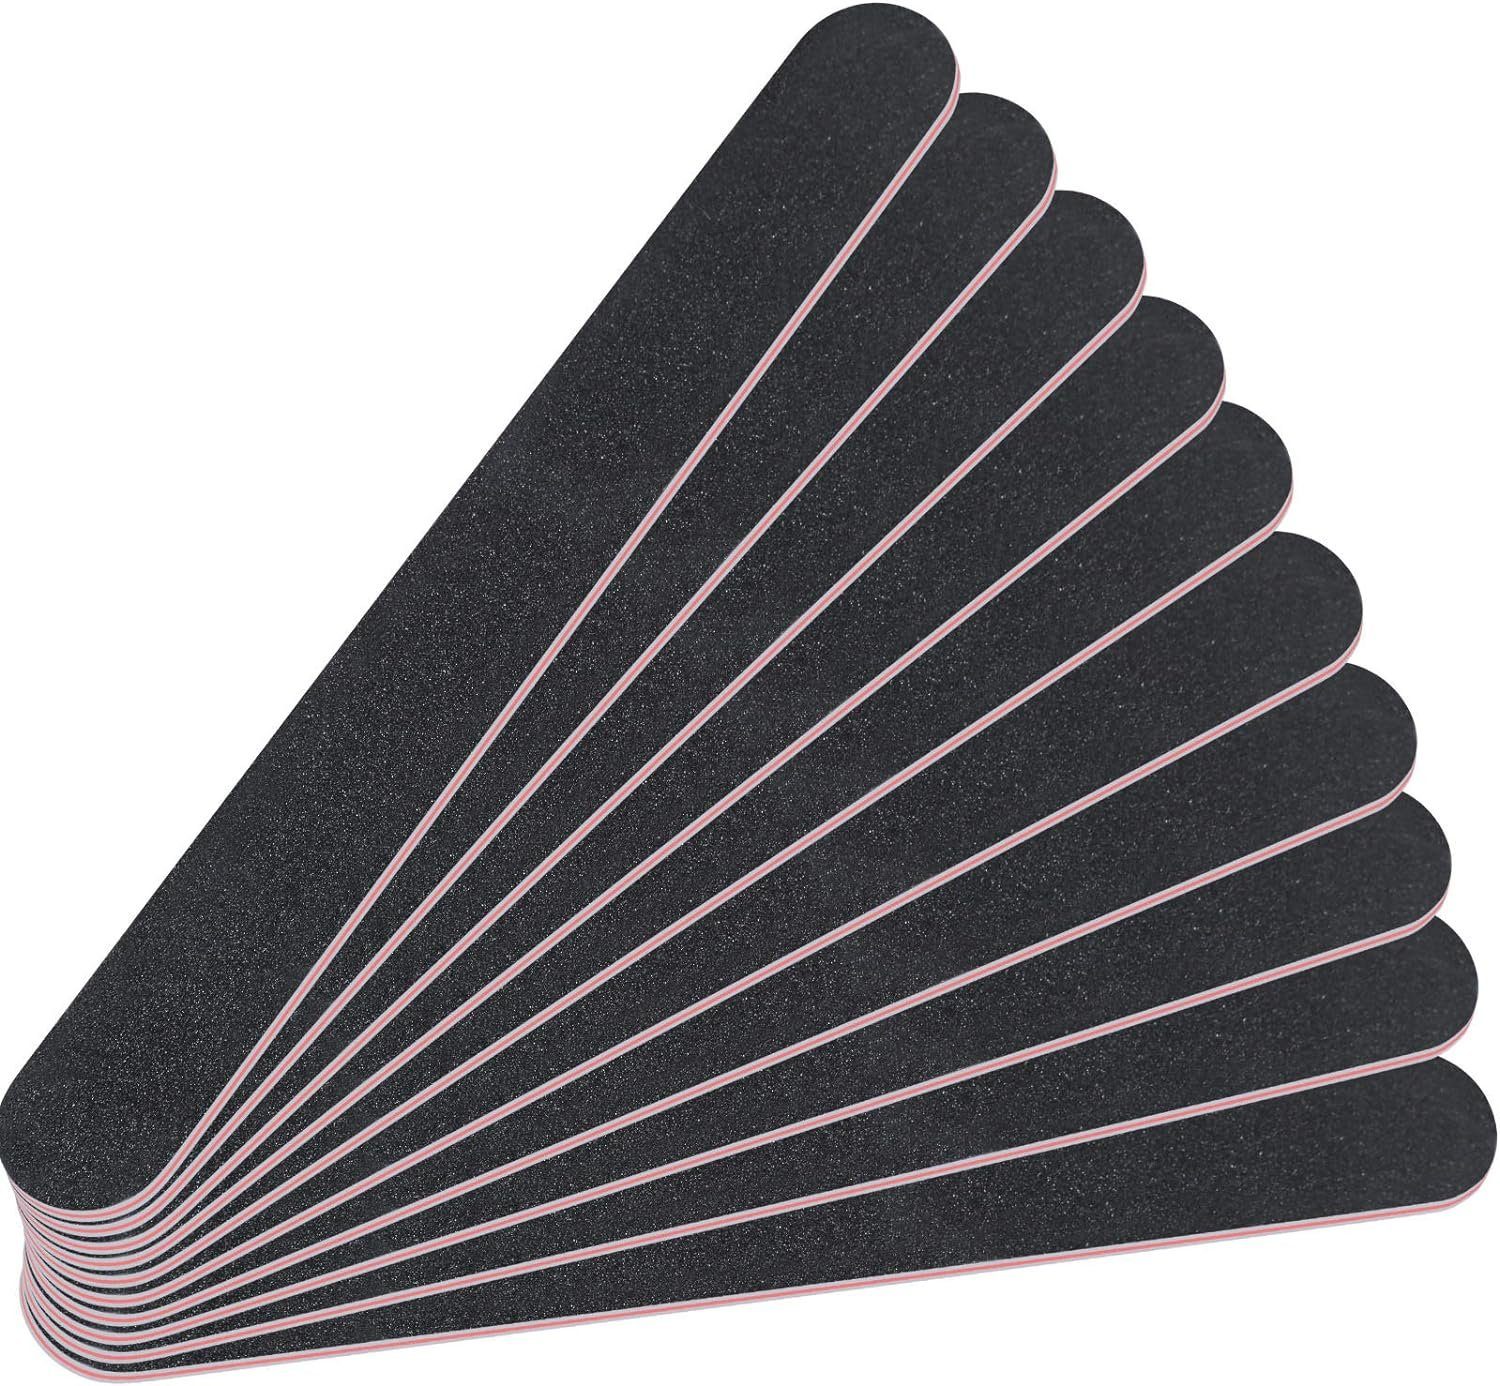 World of Nails-Design Sandblatt-Nagelfeile Körnungen, 10 schwarz Formen, haltbar Standard Studiofeile, lange gerade verschiedene Farben, 240/240 Stück